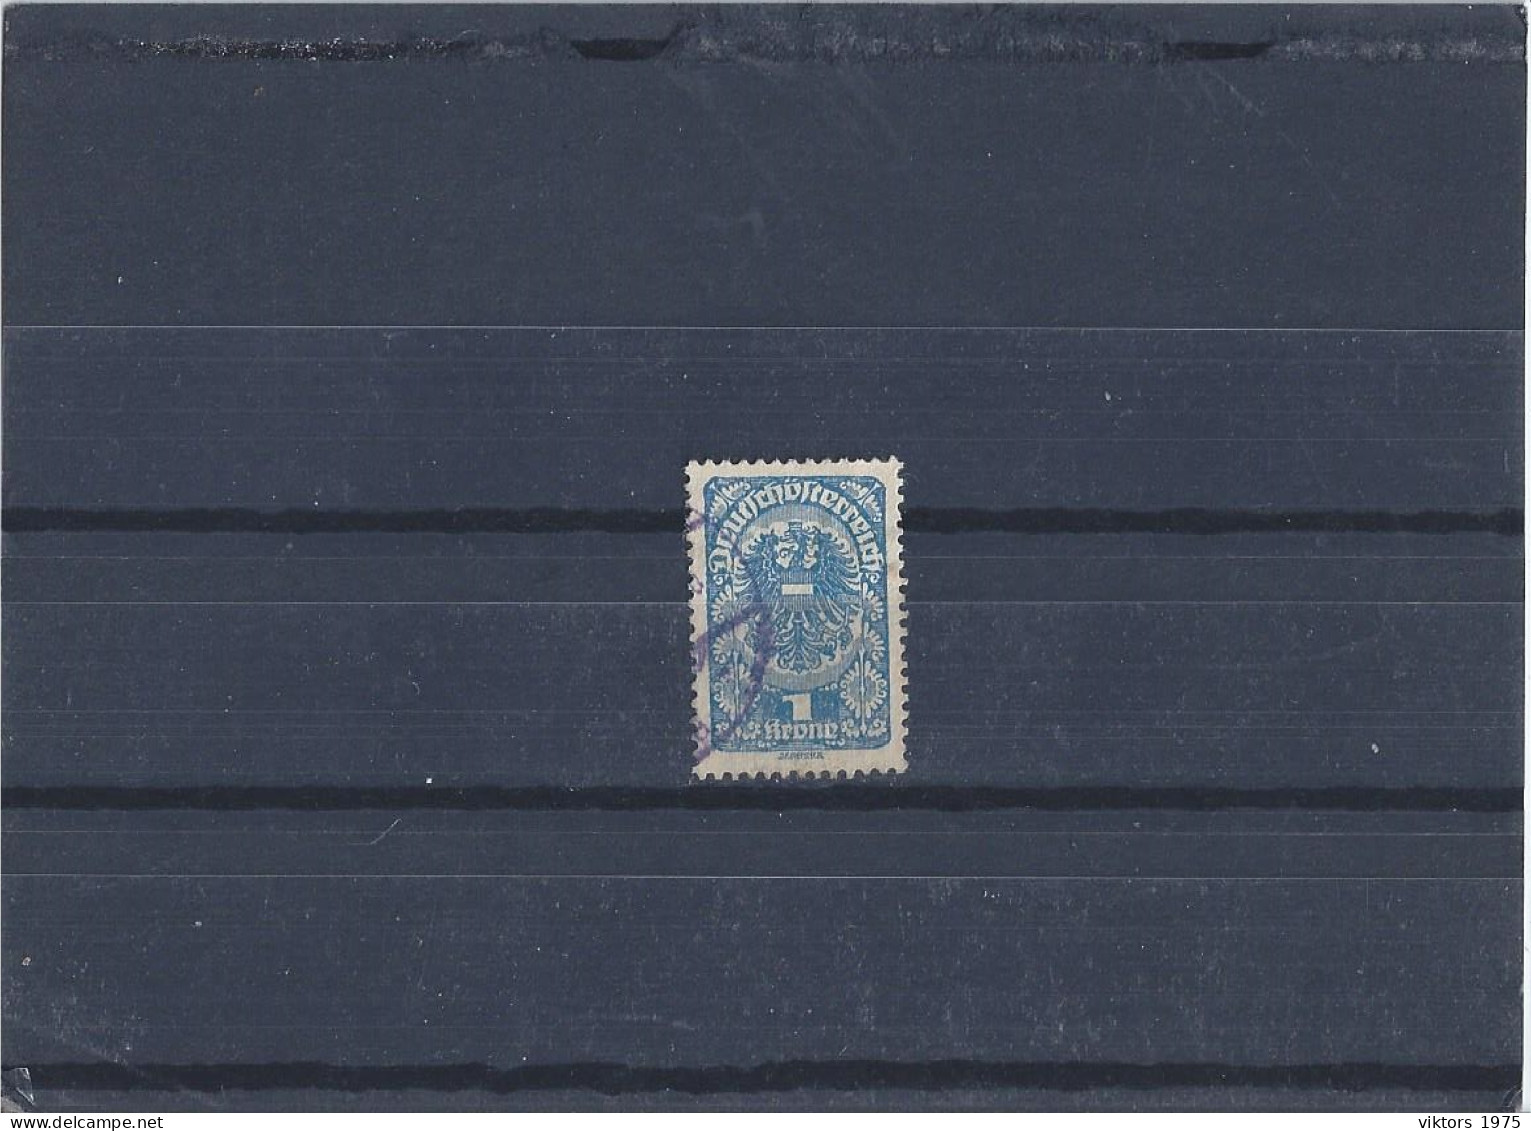 Used Stamp Nr.274 In MICHEL Catalog - Usati